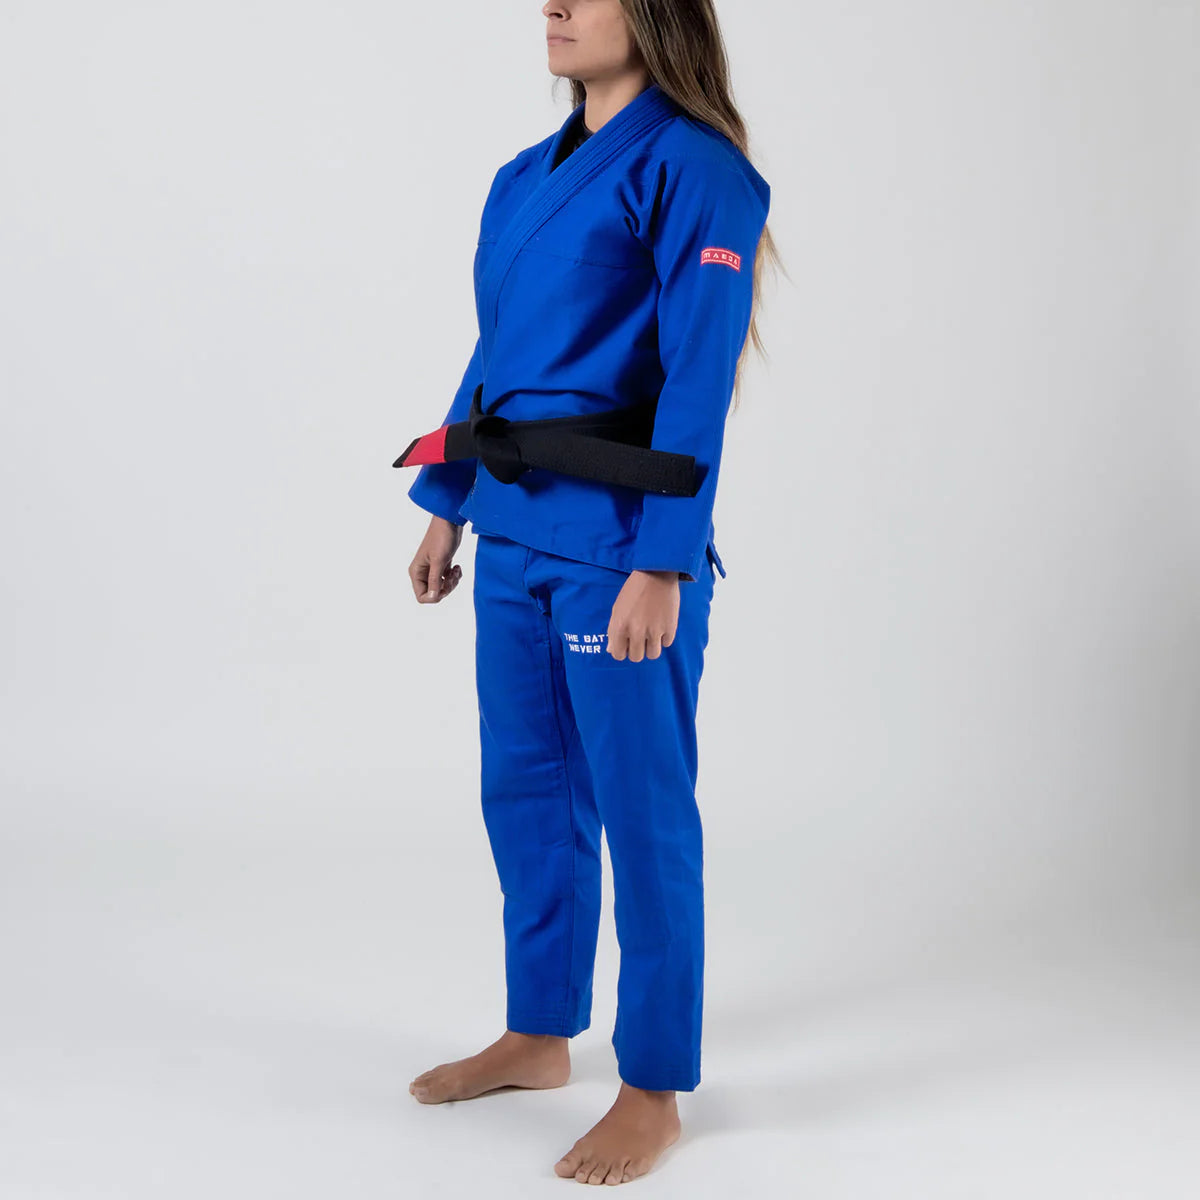 Gi Jiu Jitsu Femme Maeda Red Label 3.0 - Bleu